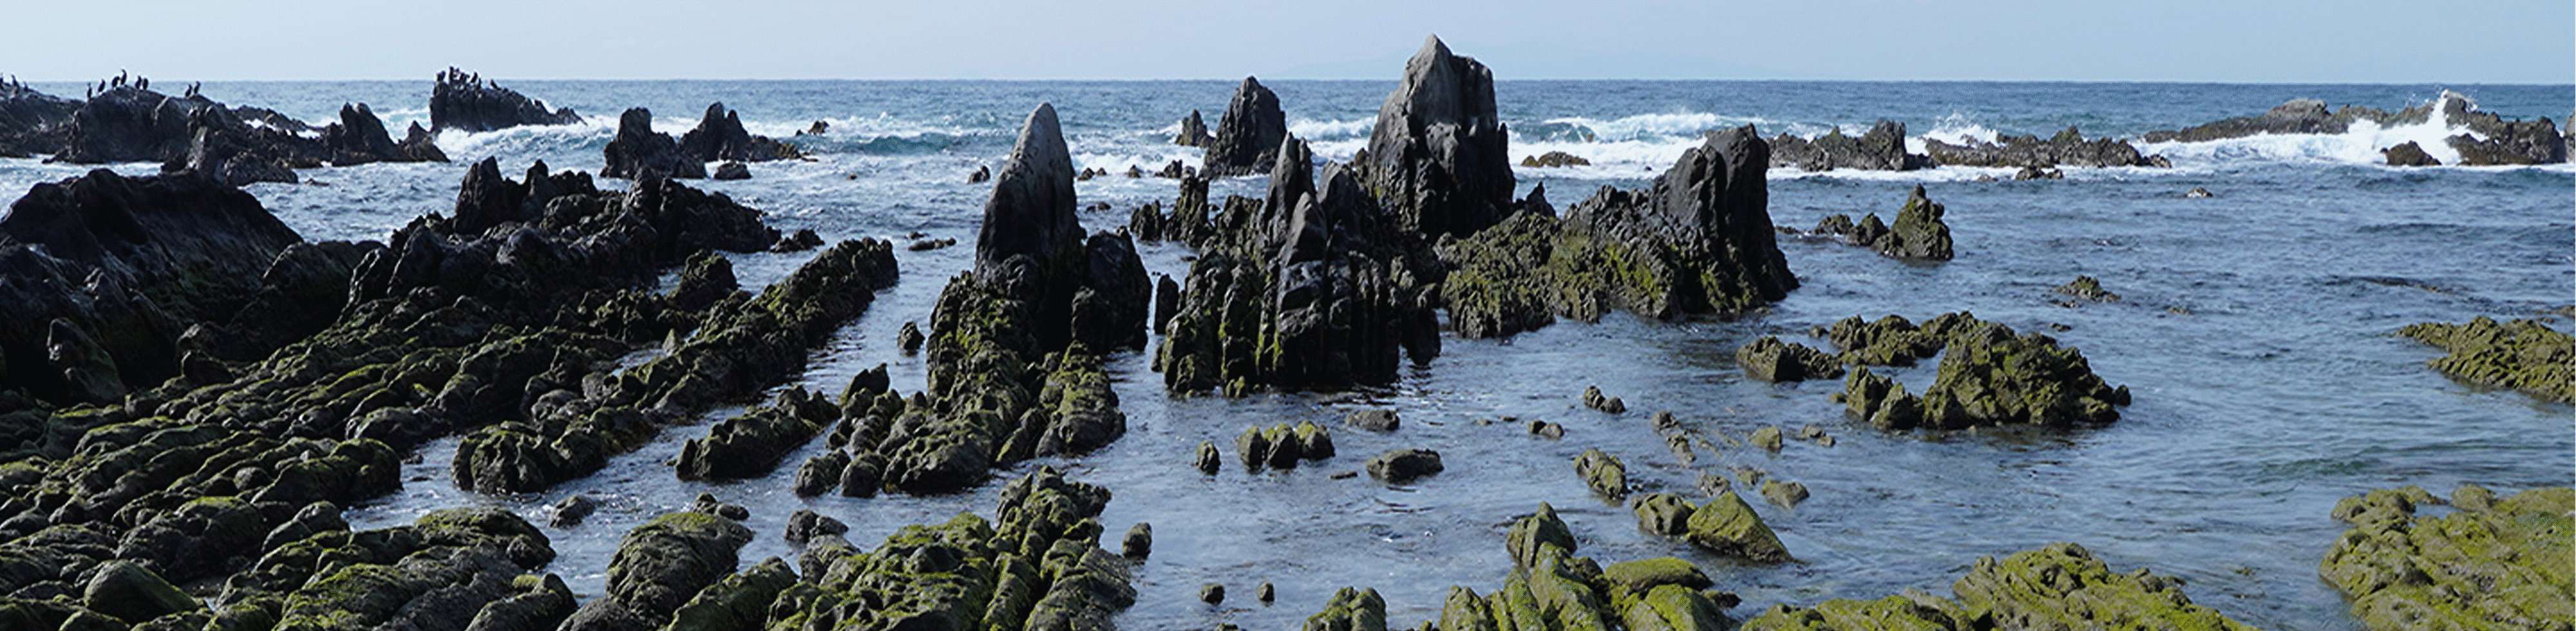 תמונה של תצורת סלעים בחוף